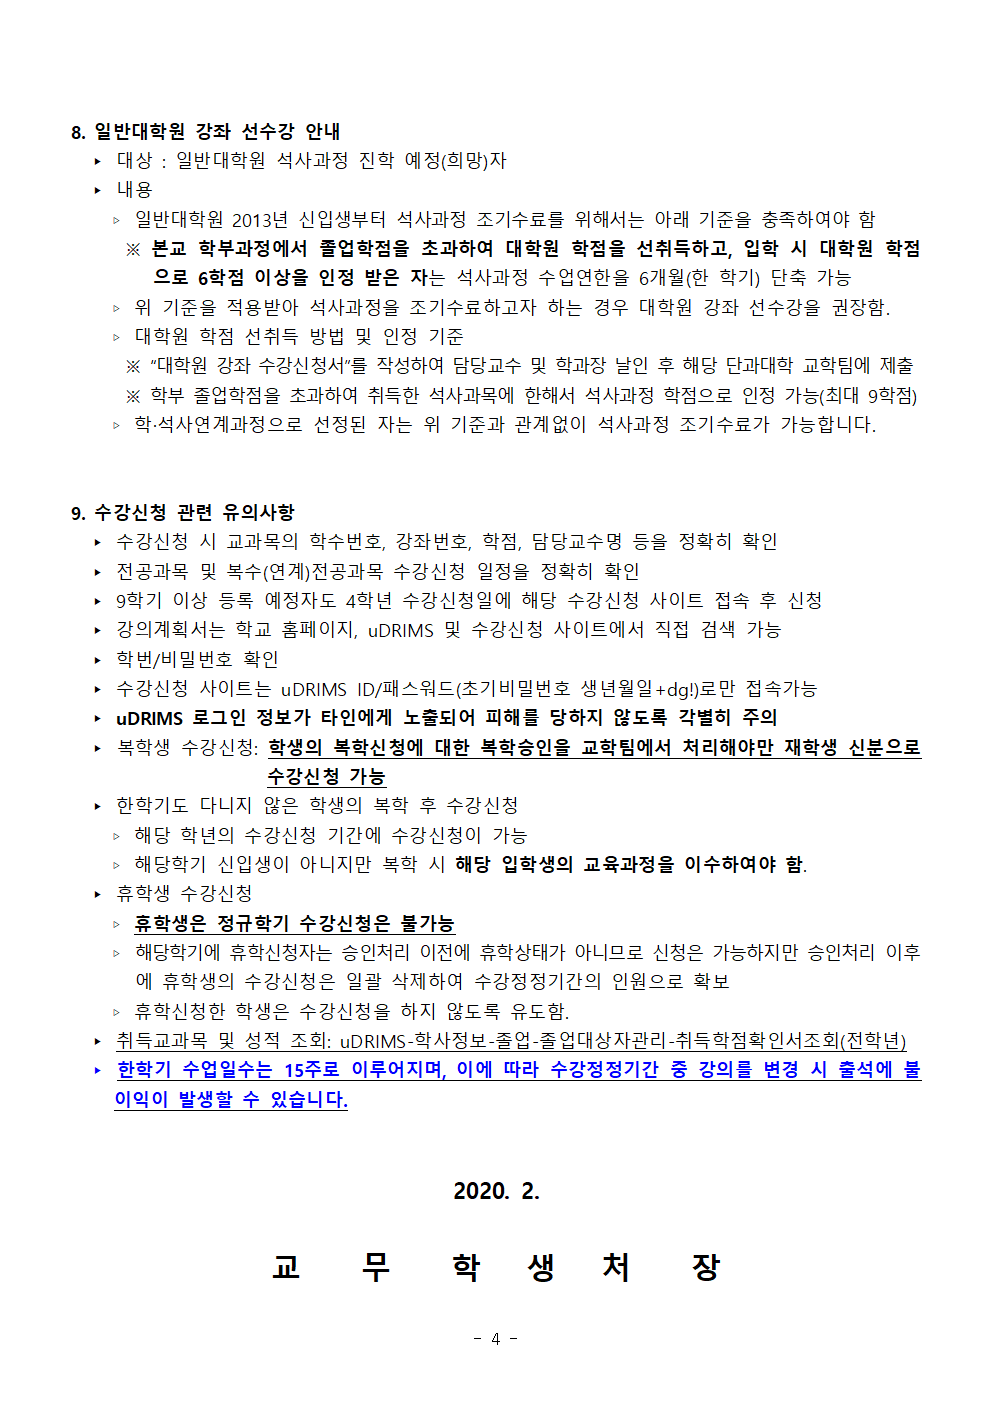 2020-1학기 학부 수강신청 안내문004.png